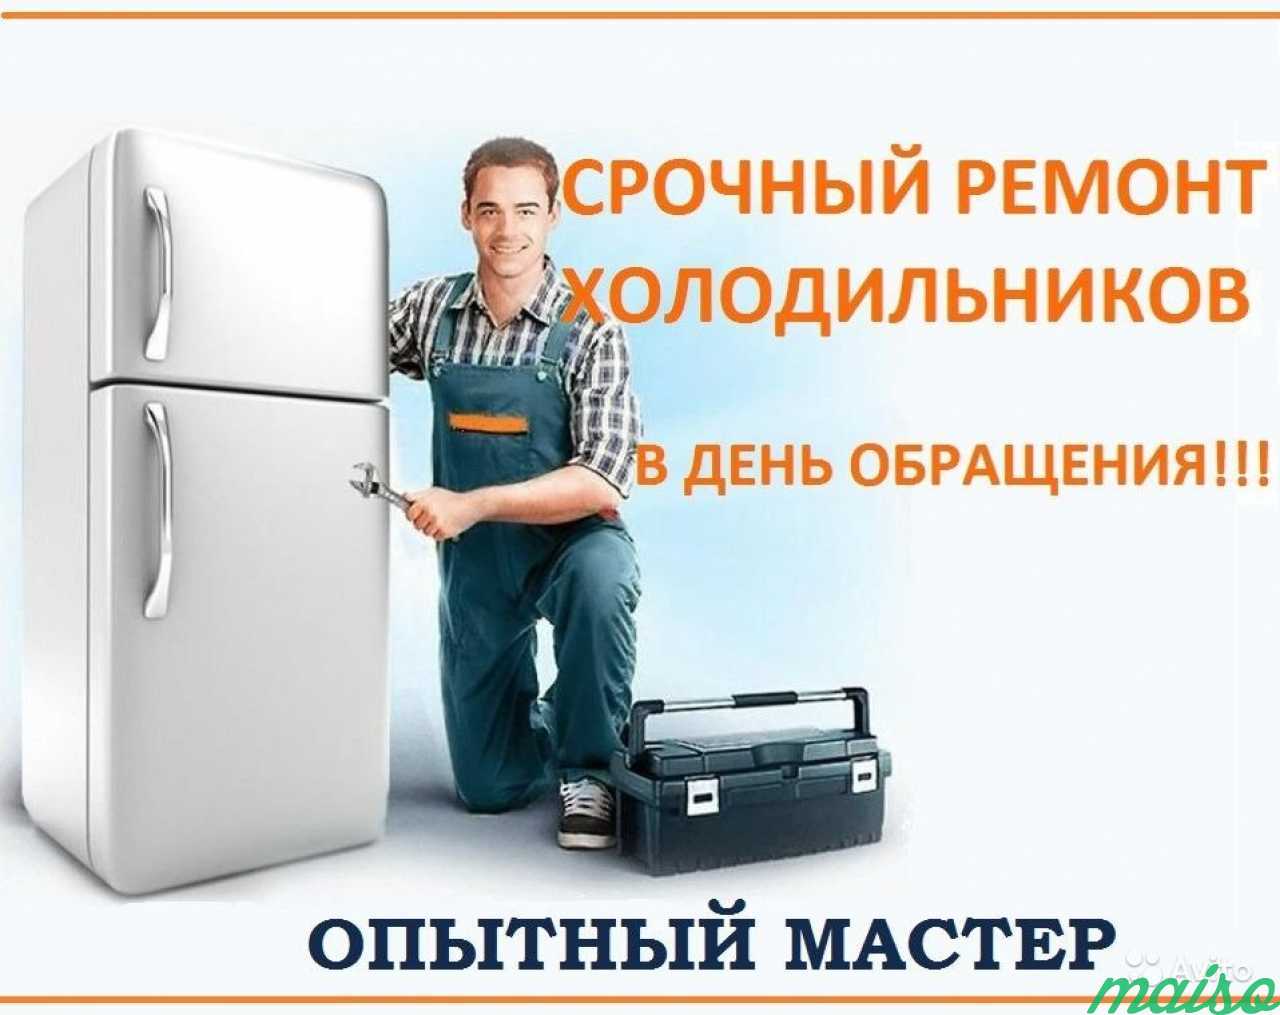 Ремонт холодильников в Санкт-Петербурге. Фото 1